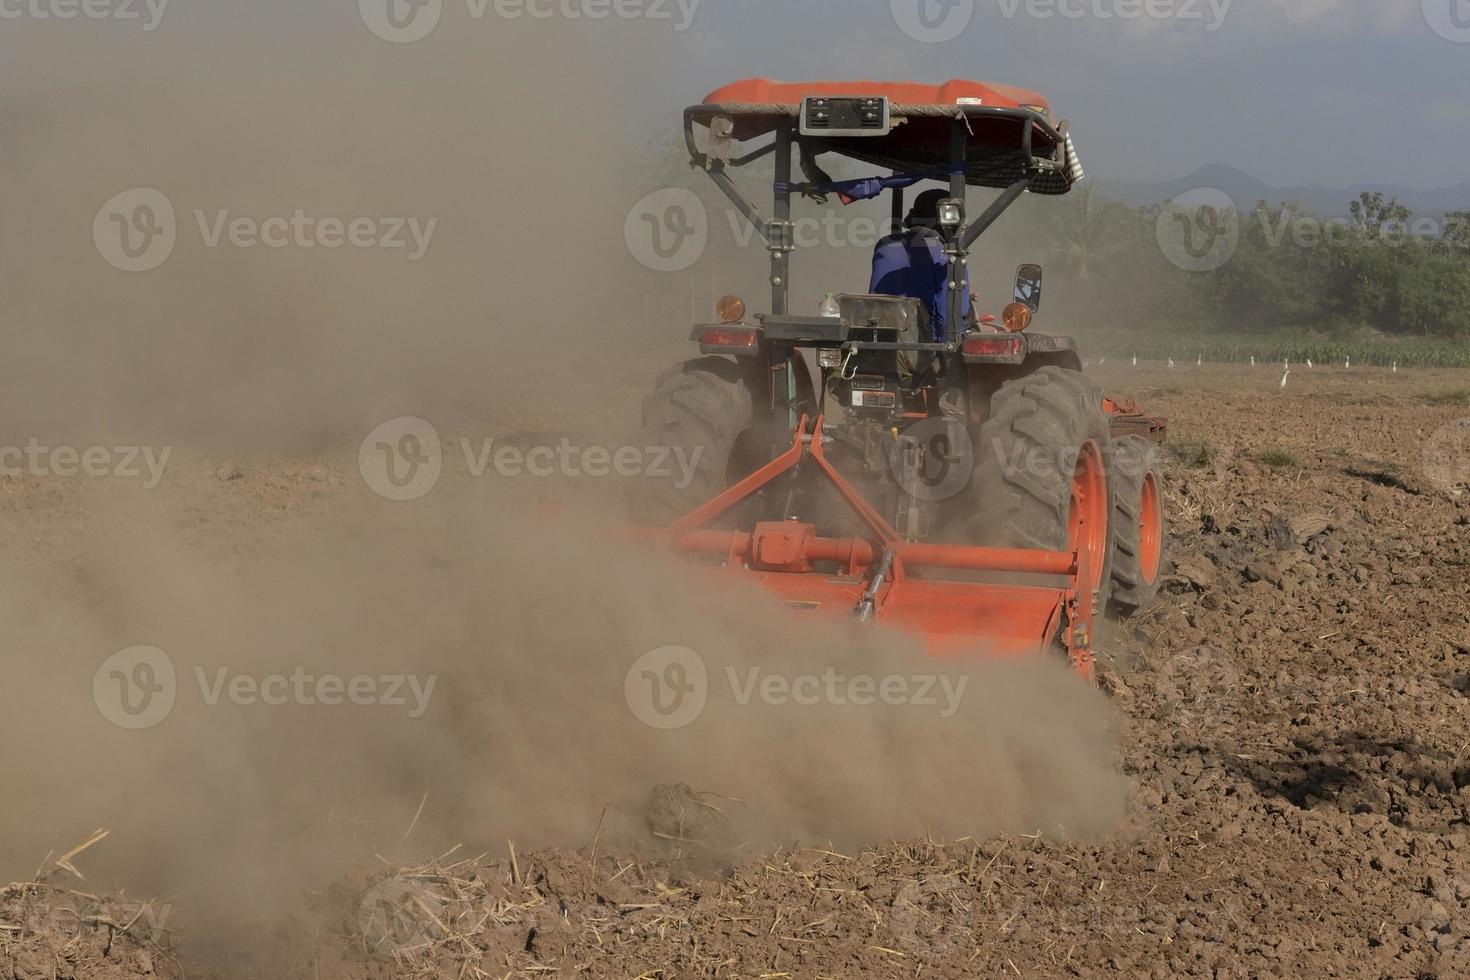 boeren in tractoren bereiden landcultivators voor. tractoren die de grond ploegen om de grond aan te passen voor landbouw foto